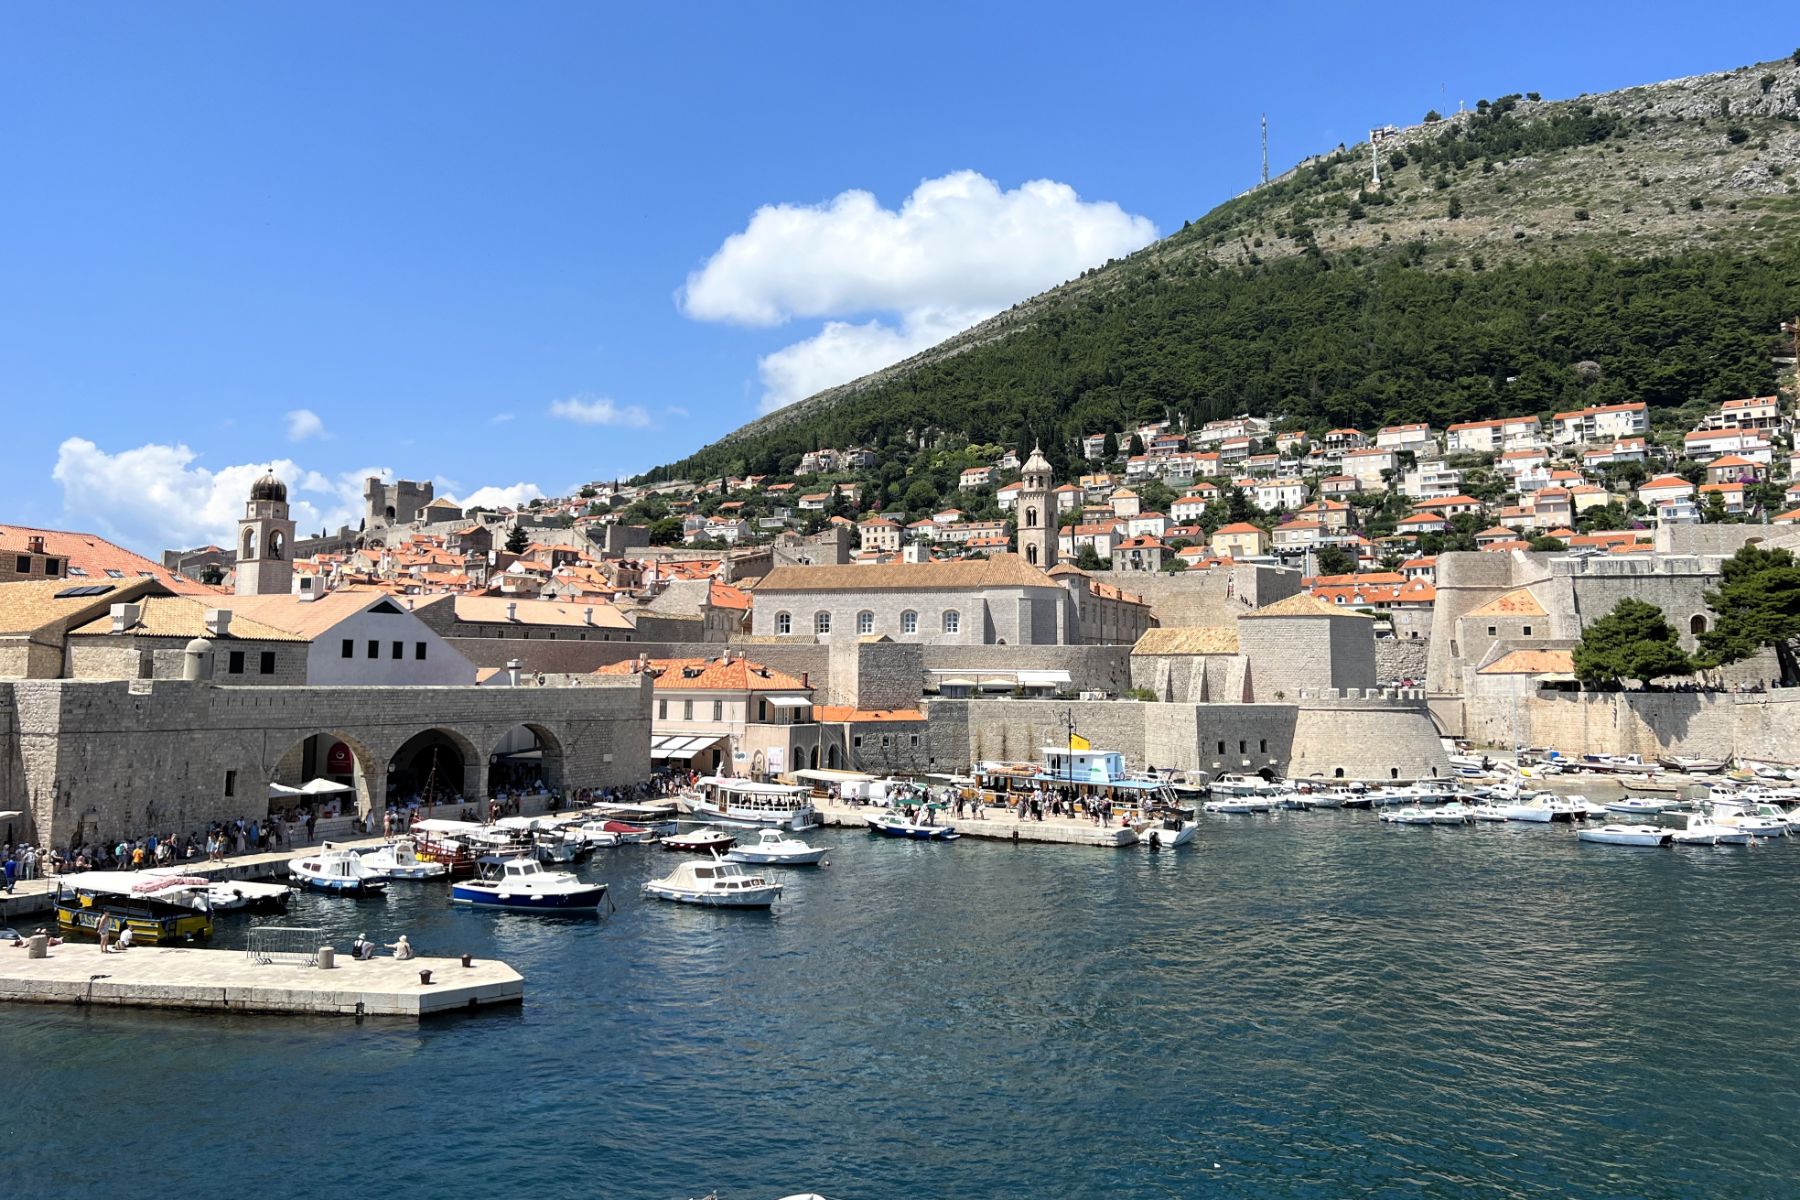 Dubrovnik REVIEW|ドブロブニク お客様の声